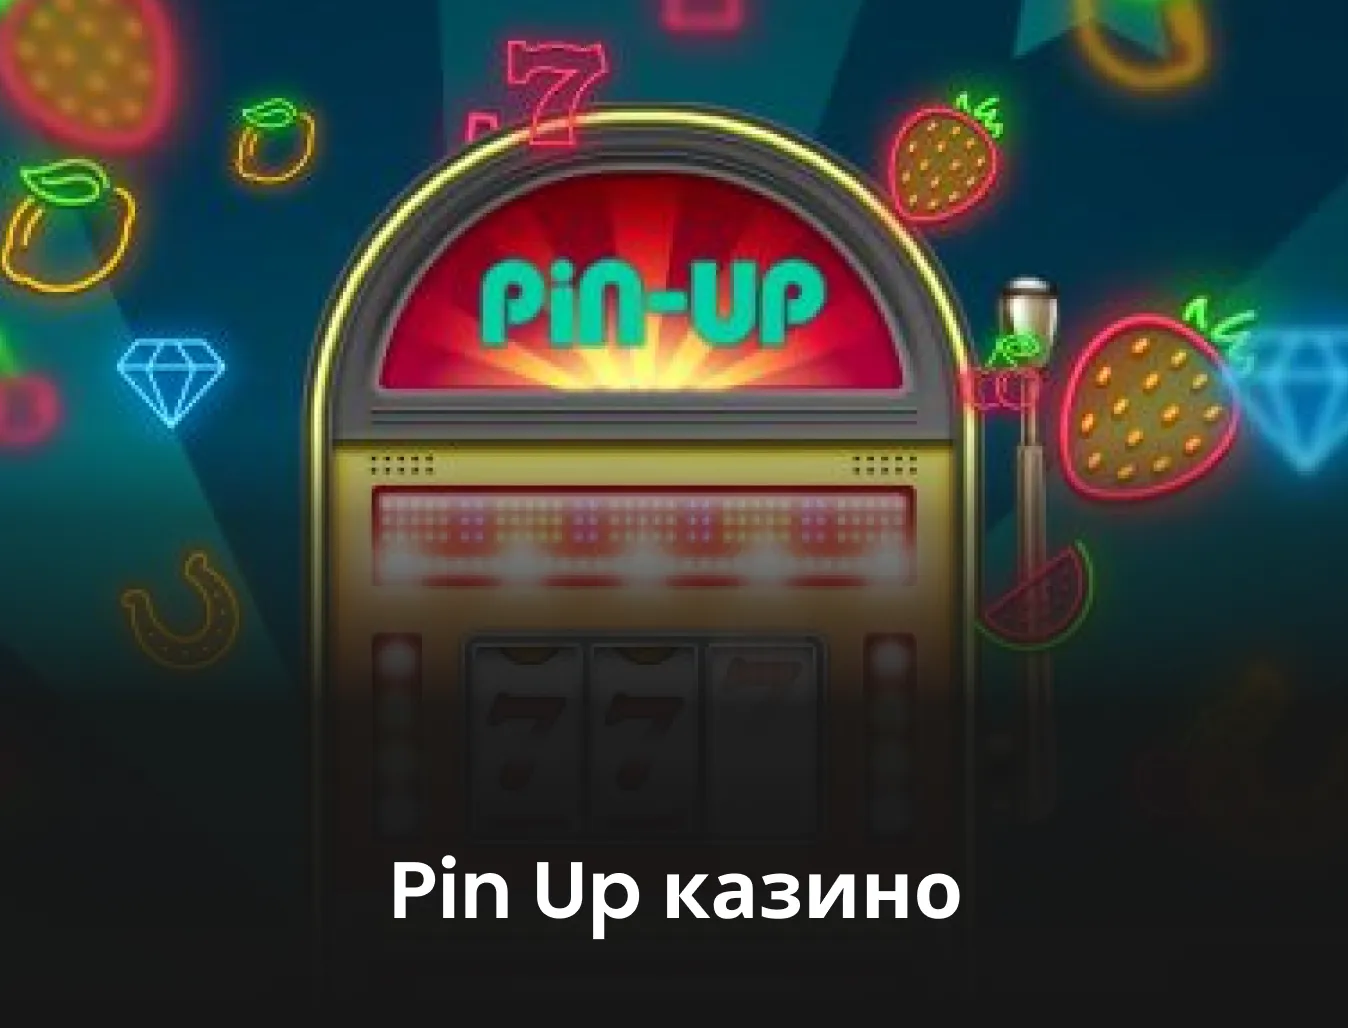 Agora você pode fazer sua https://jogarmines.com.br/casino/pin-up/  com segurança